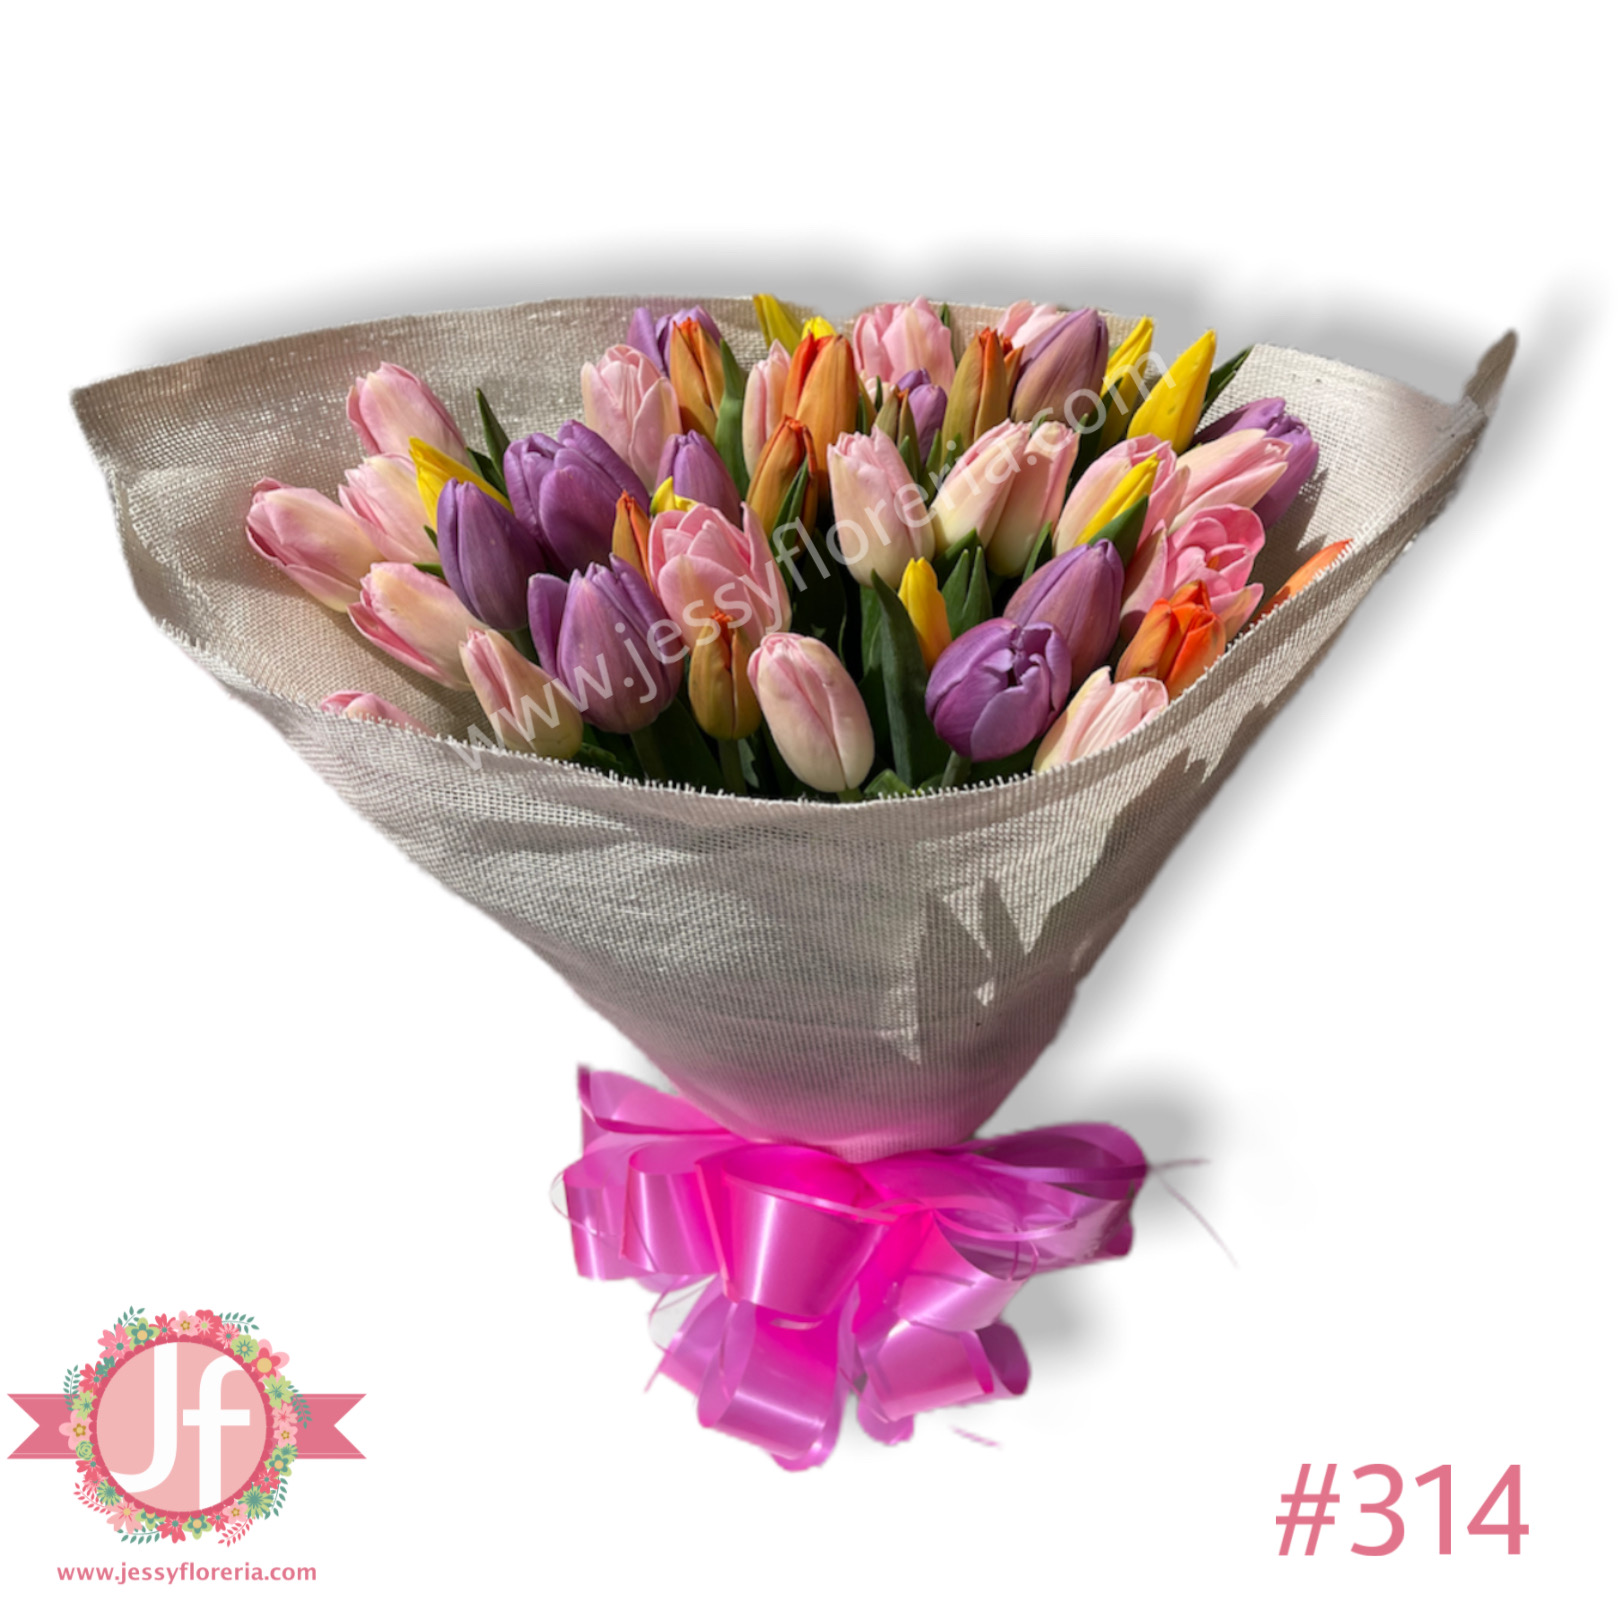 Ramo de 50 tulipanes - Envío GRATIS mismo día 2-4 Hrs